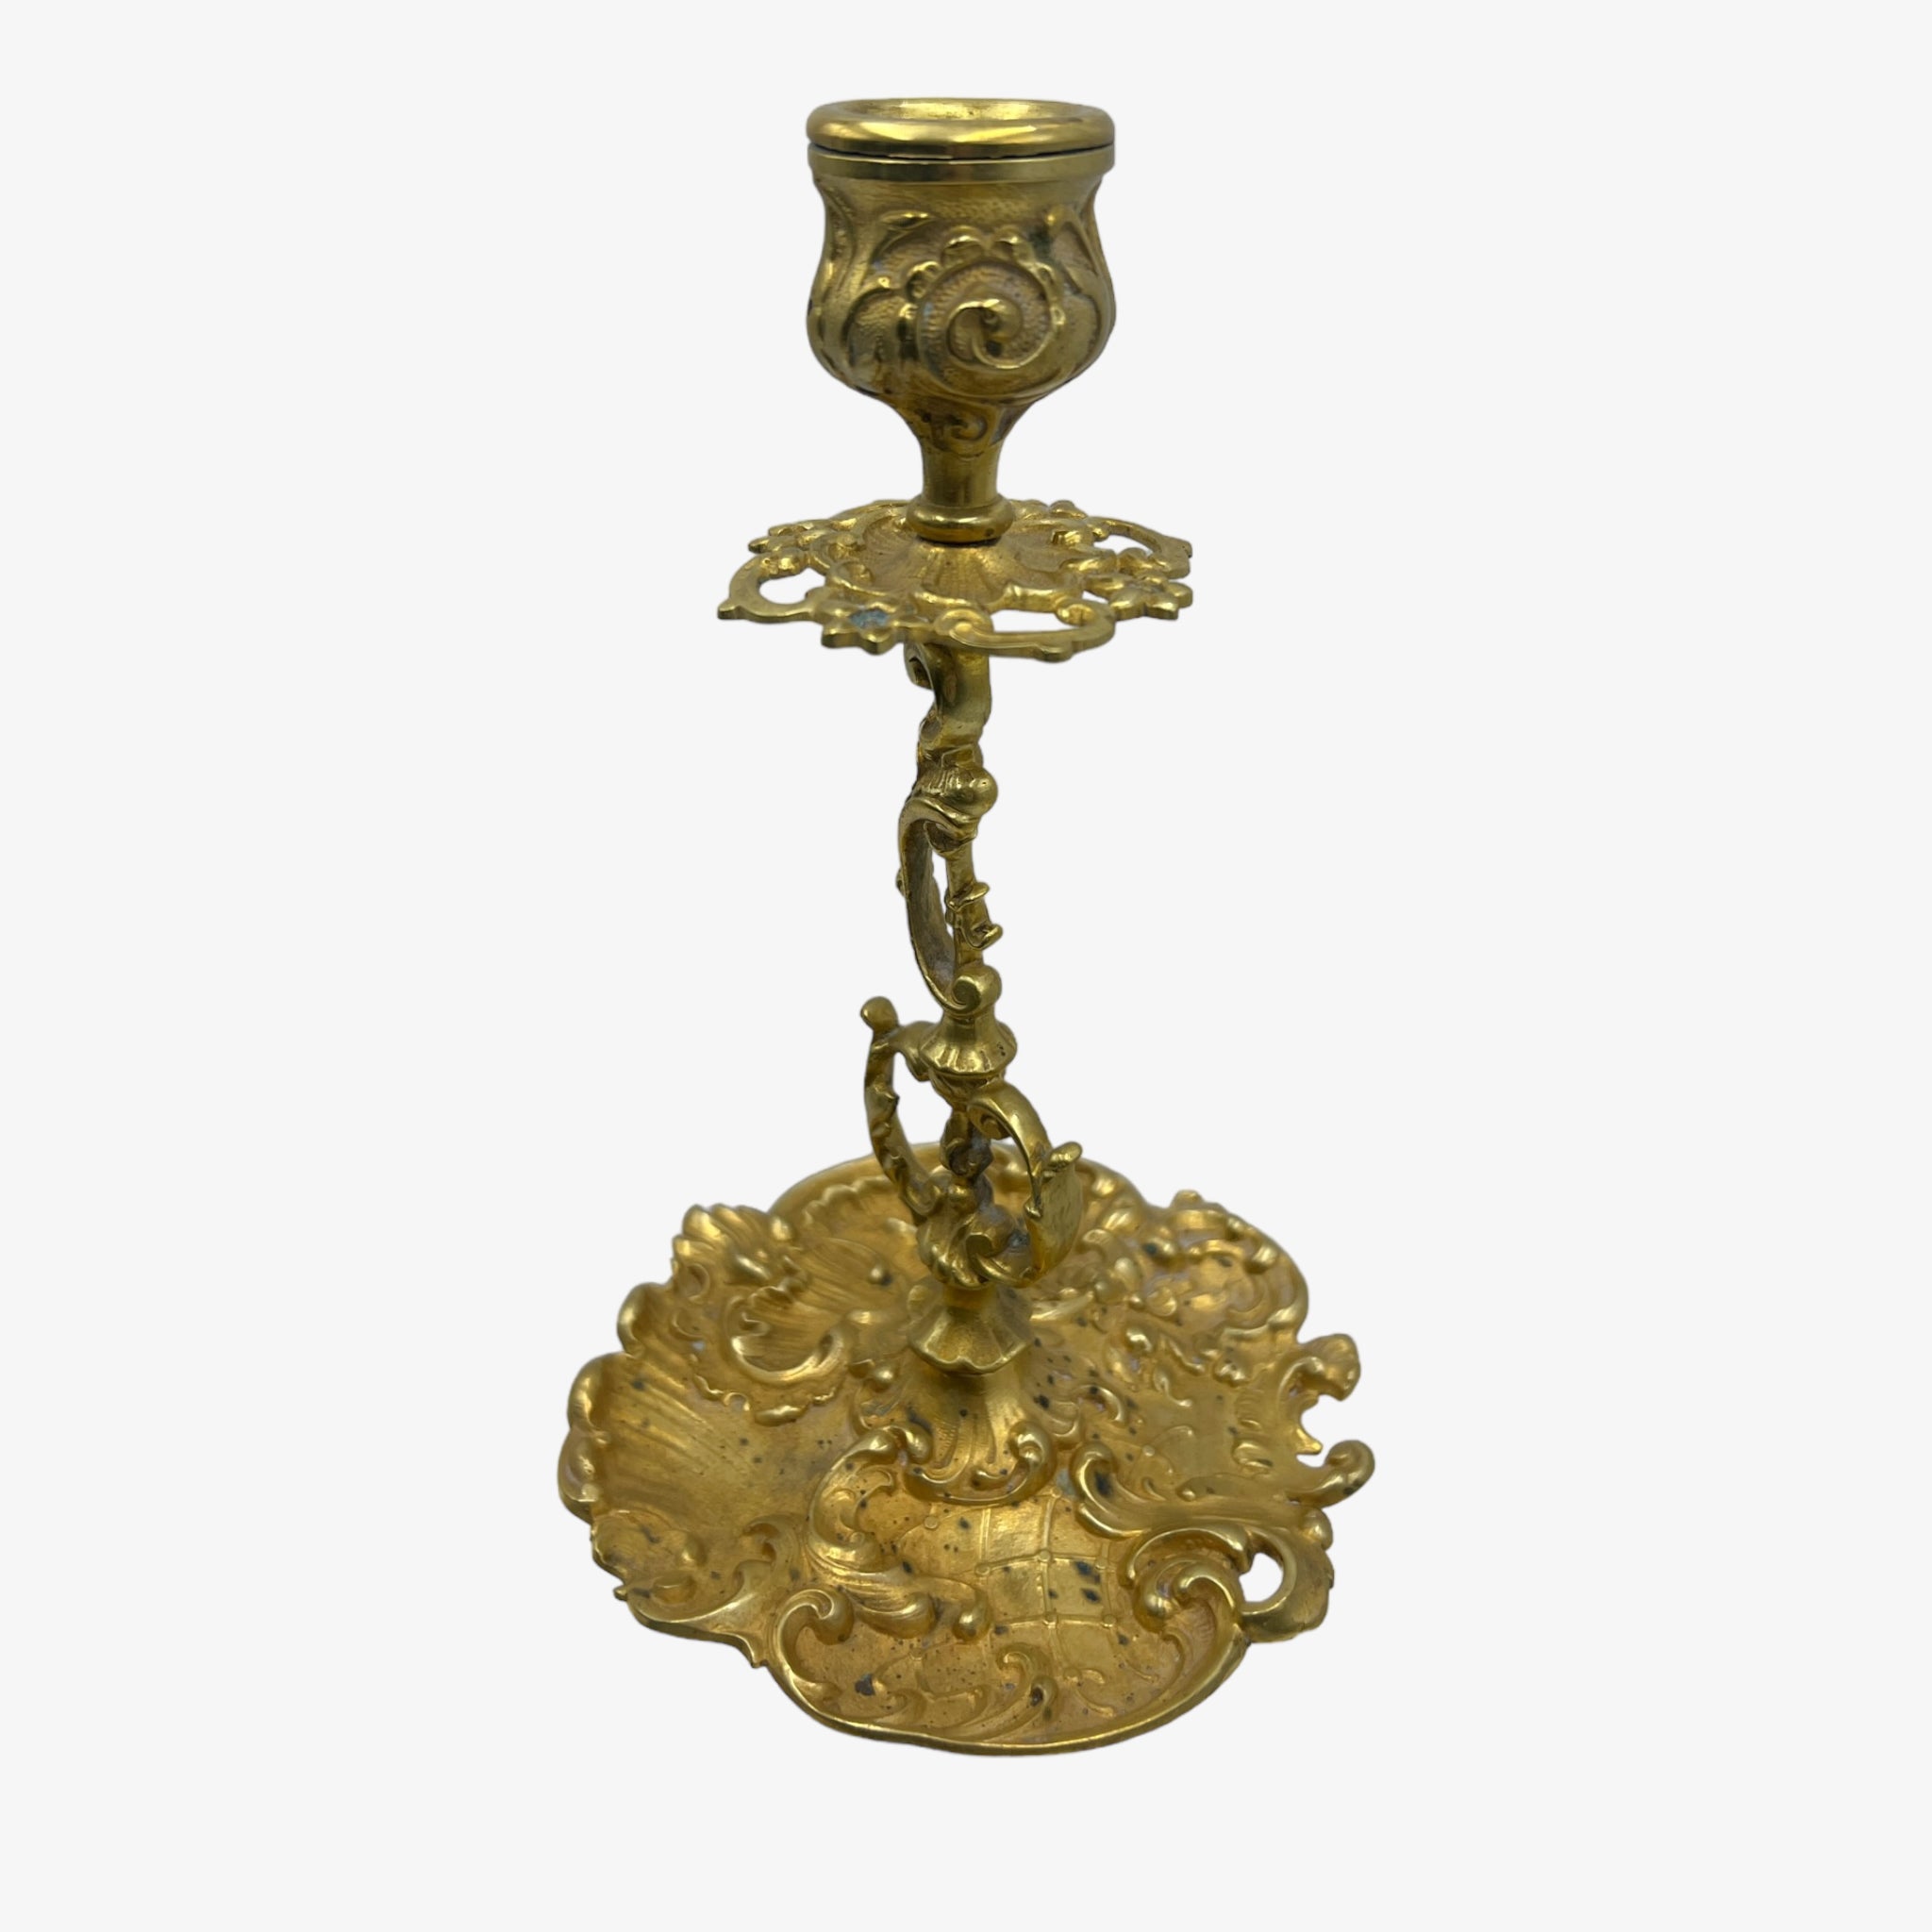 Antique Art Nouveau German Brass Candle Holder